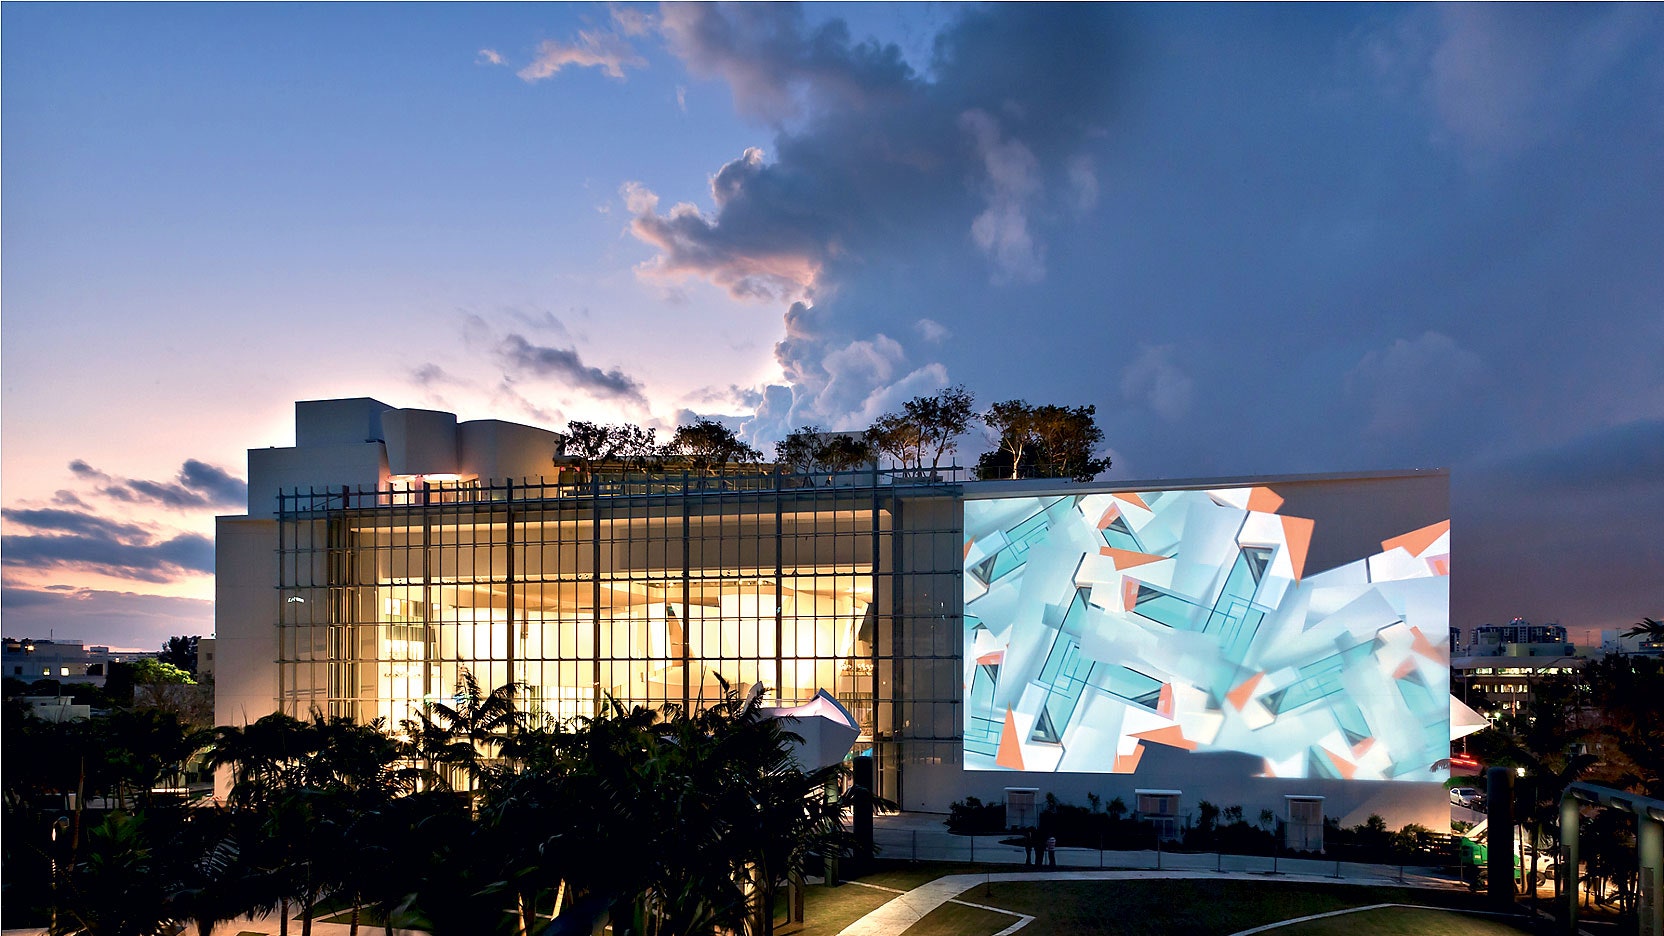 Симфонический театр в Майами по проекту Фрэнка Гери с заломтрансформером и сценой | Admagazine